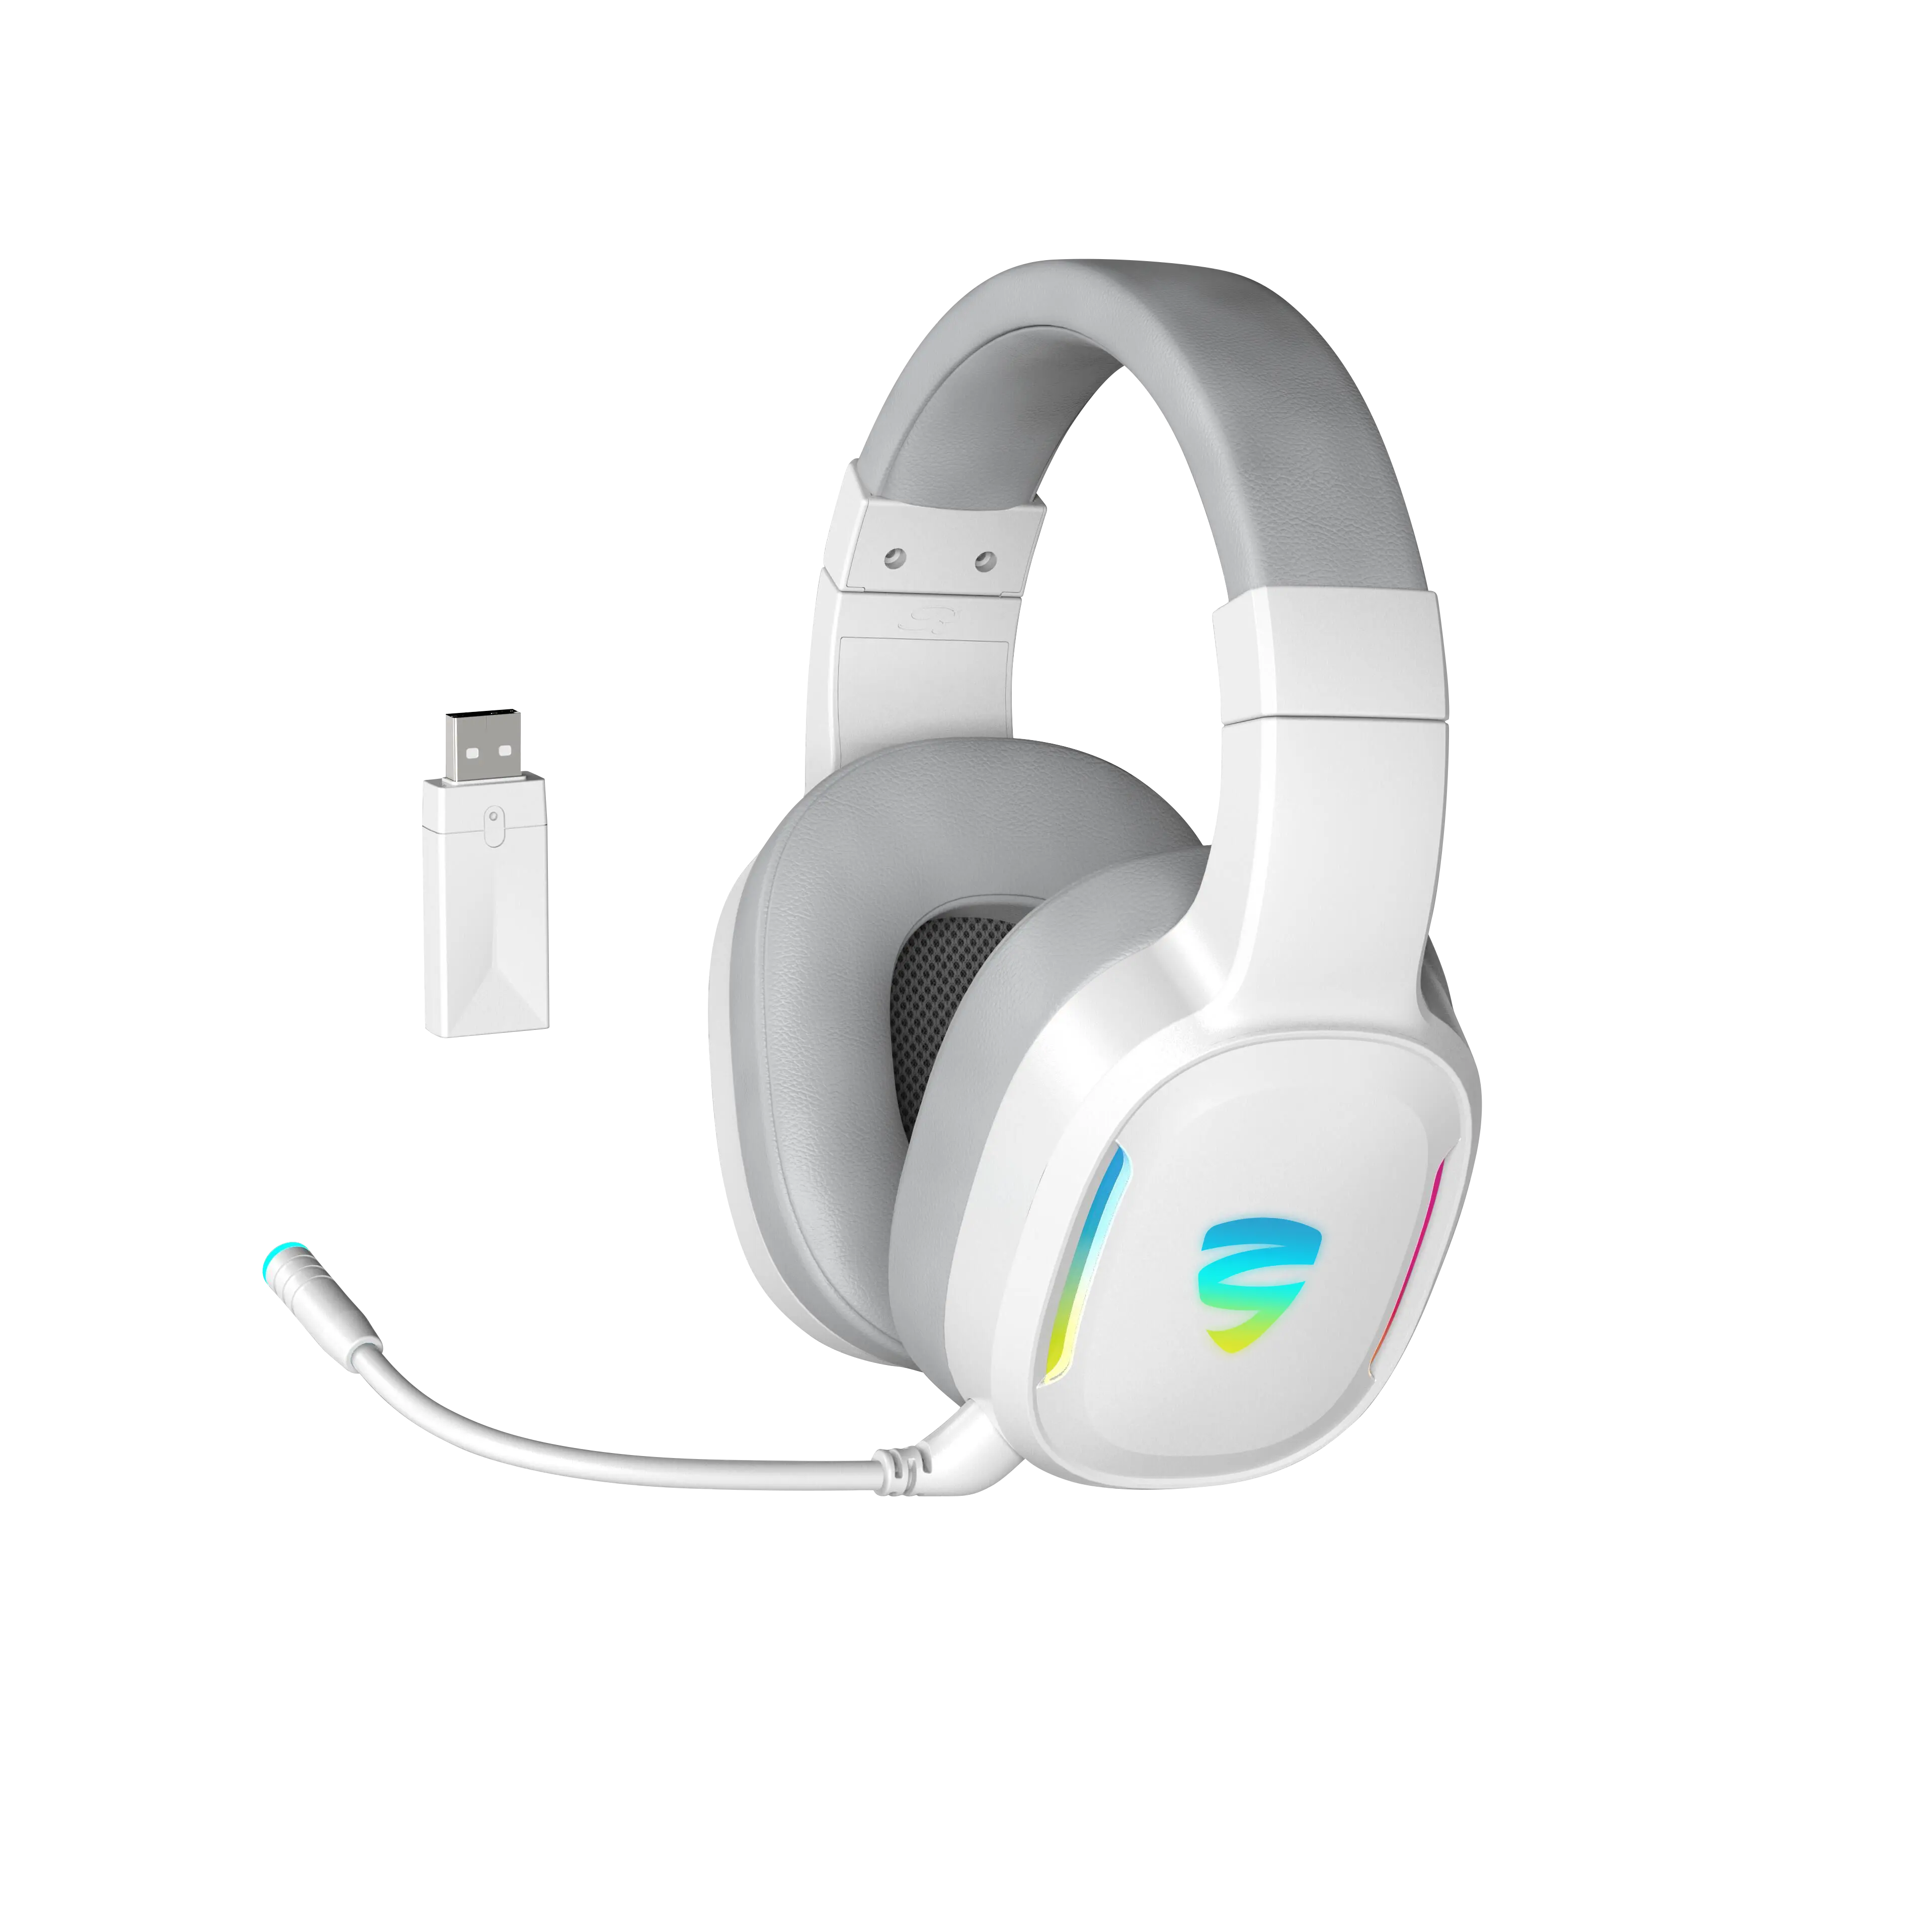 Novo sem fio gaming headset 2.4g + bt + modos triplos, dinâmico rgb retroiluminado, fones de ouvido montado na cabeça